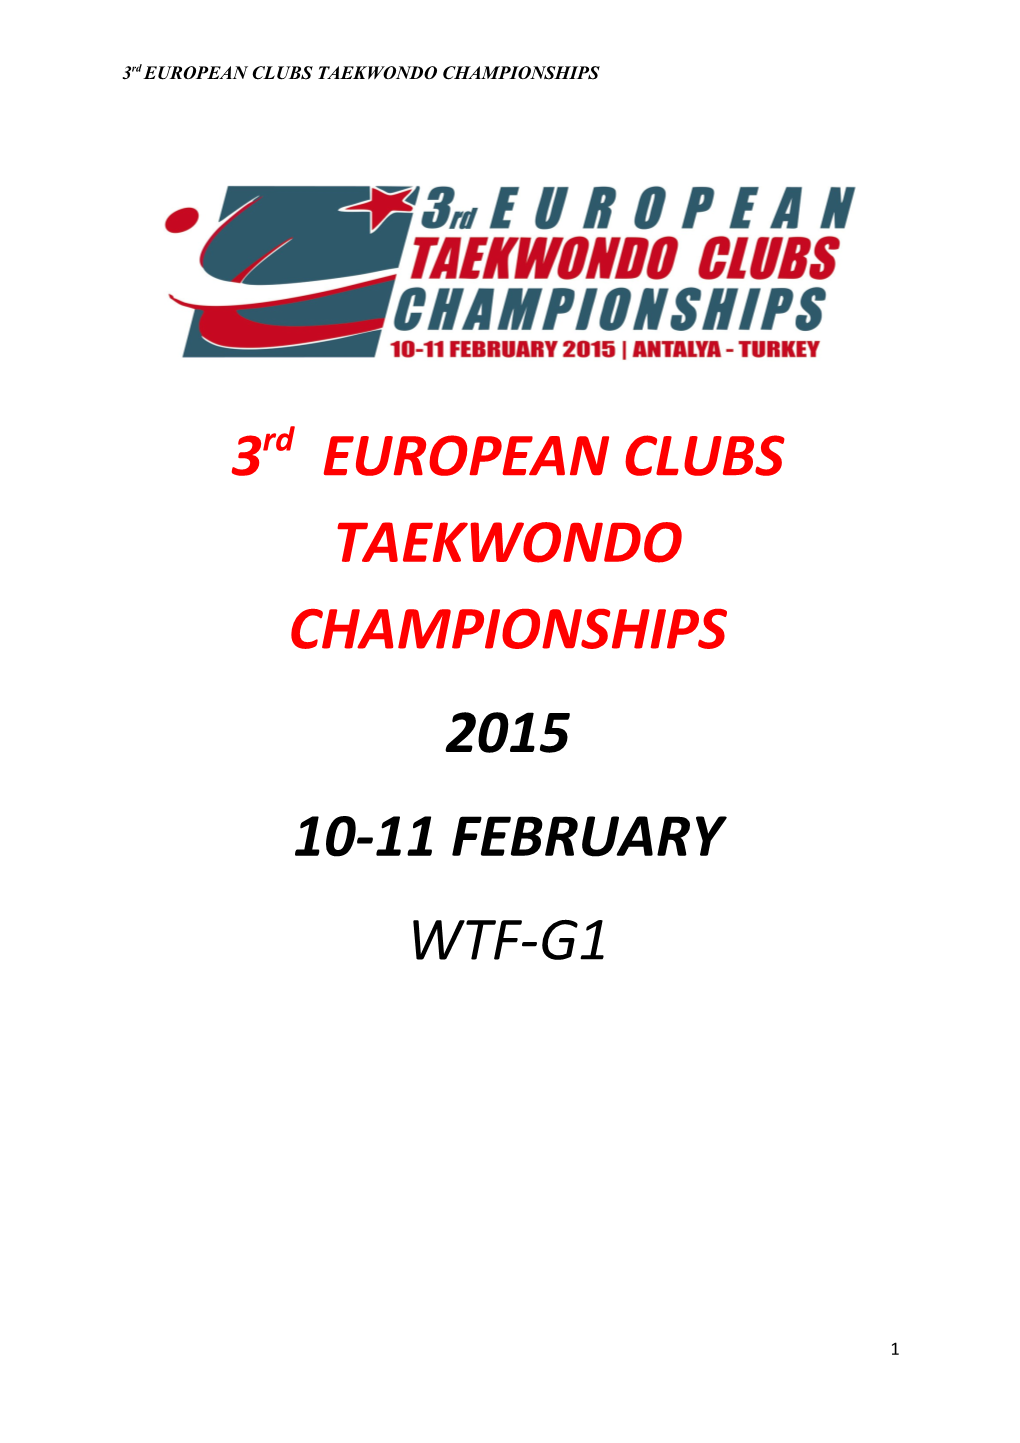 3Rd EUROPEAN CLUBS TAEKWONDO CHAMPIONSHIPS